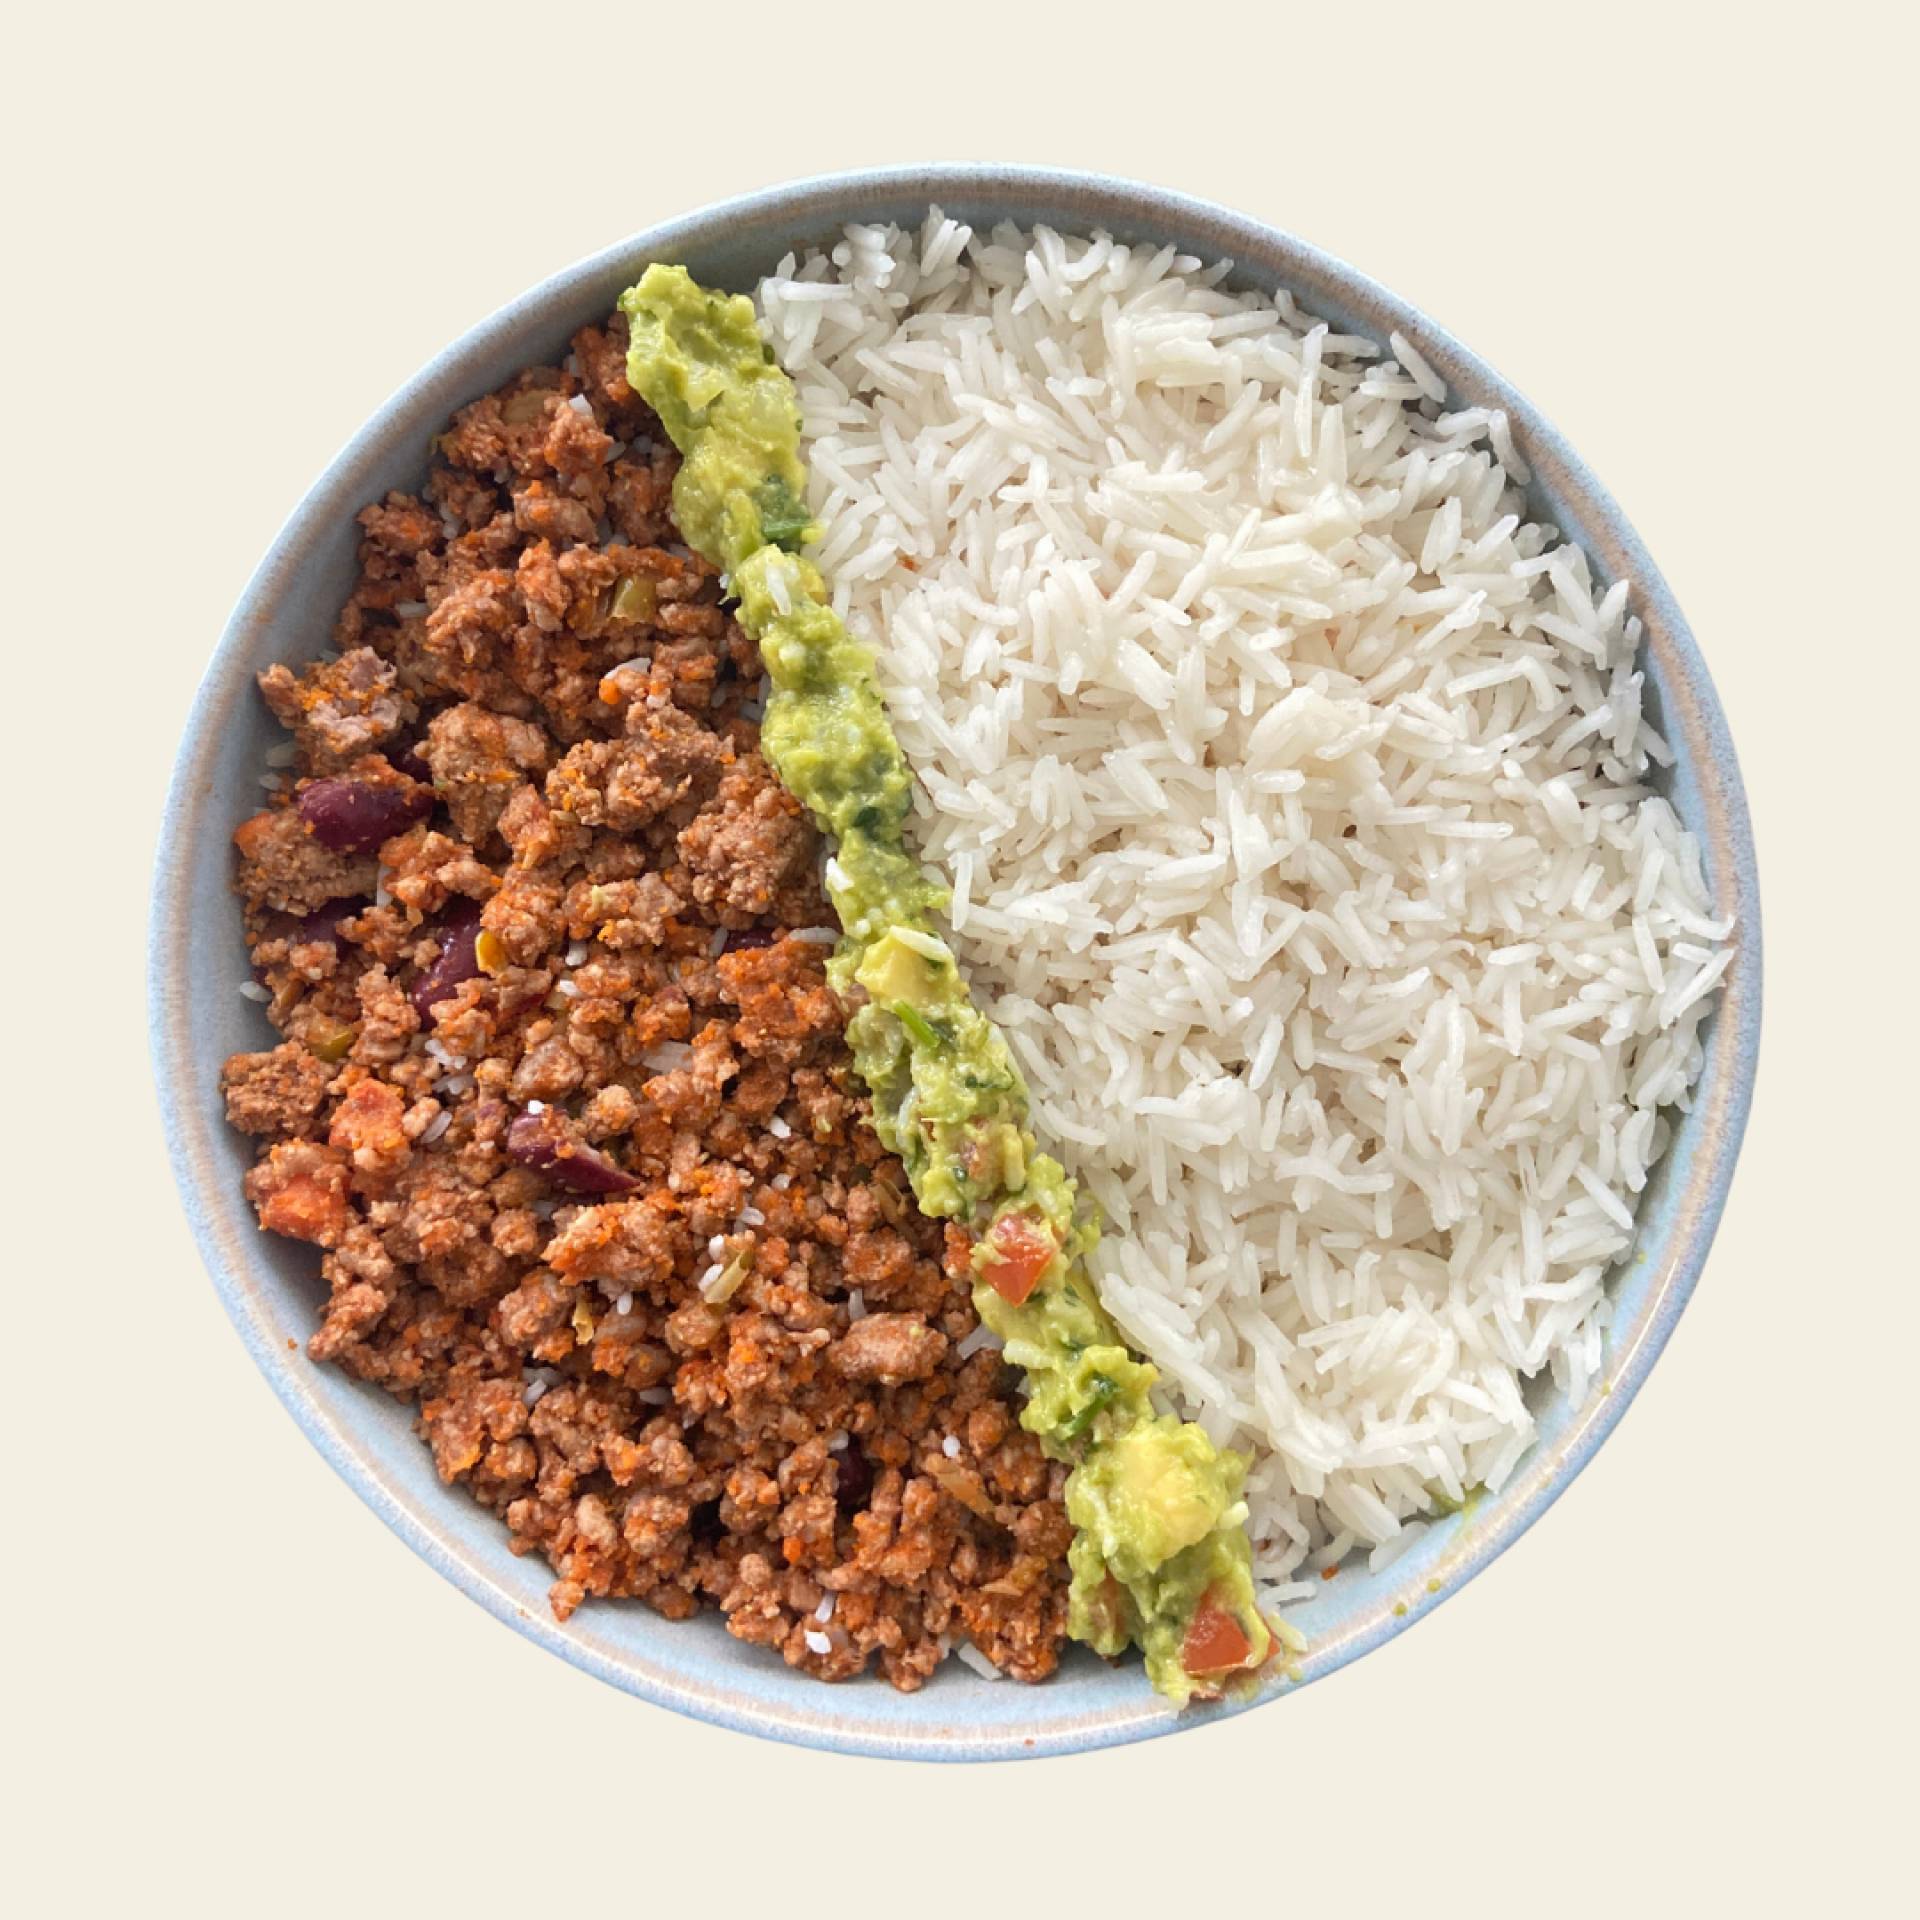 Chili con carne,white rice and guacamole